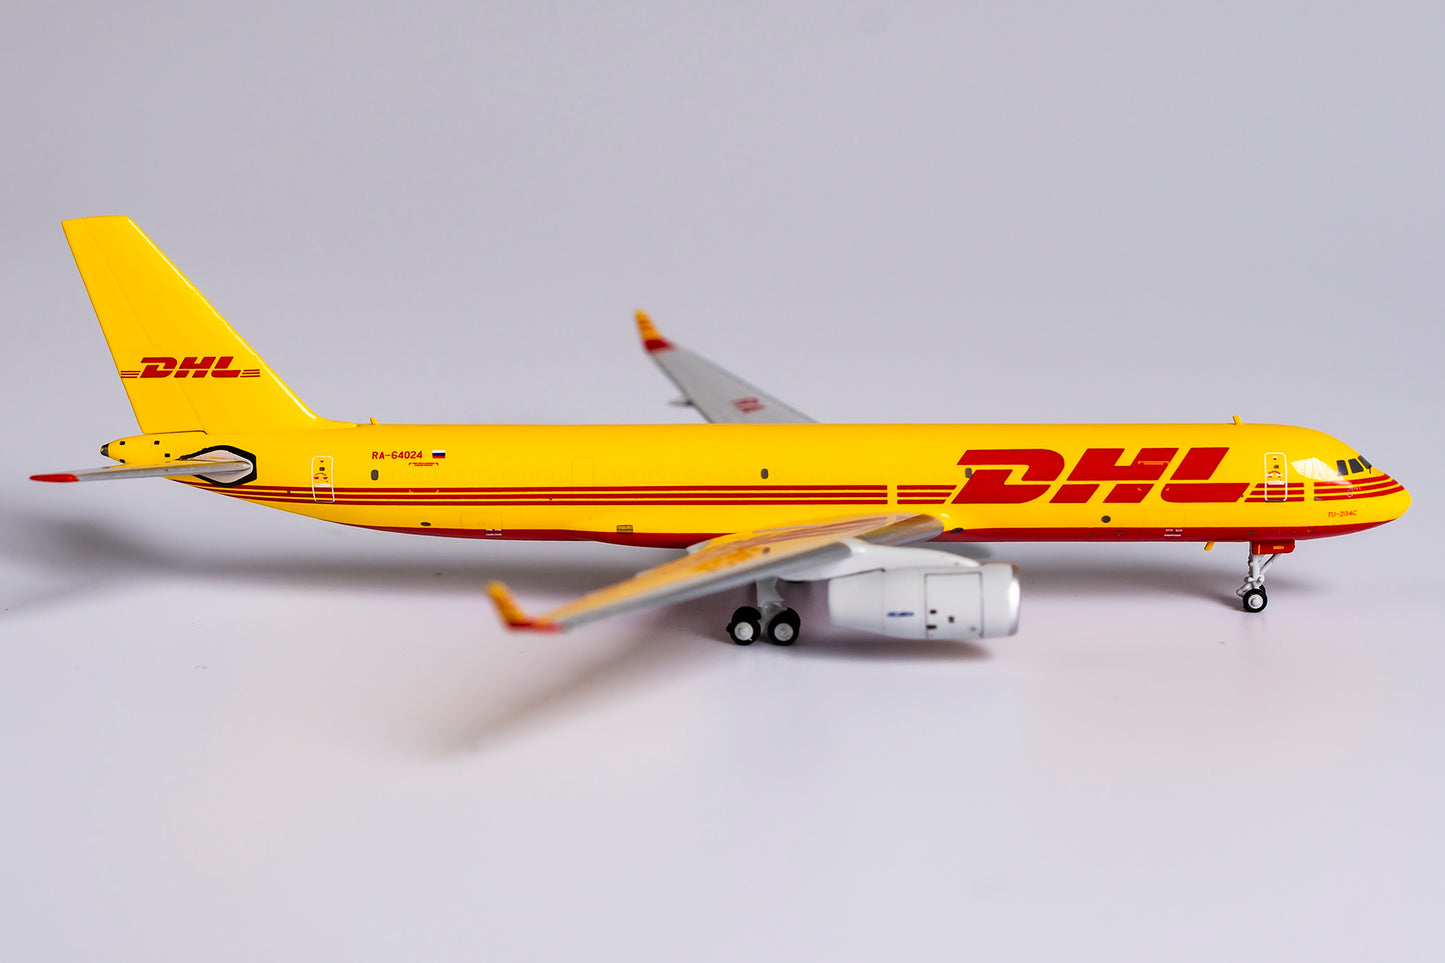 1:400 NG Models DHL Aviation TU-204-100C (Aviastar-Tu Air Company) RA-64024 NG40005